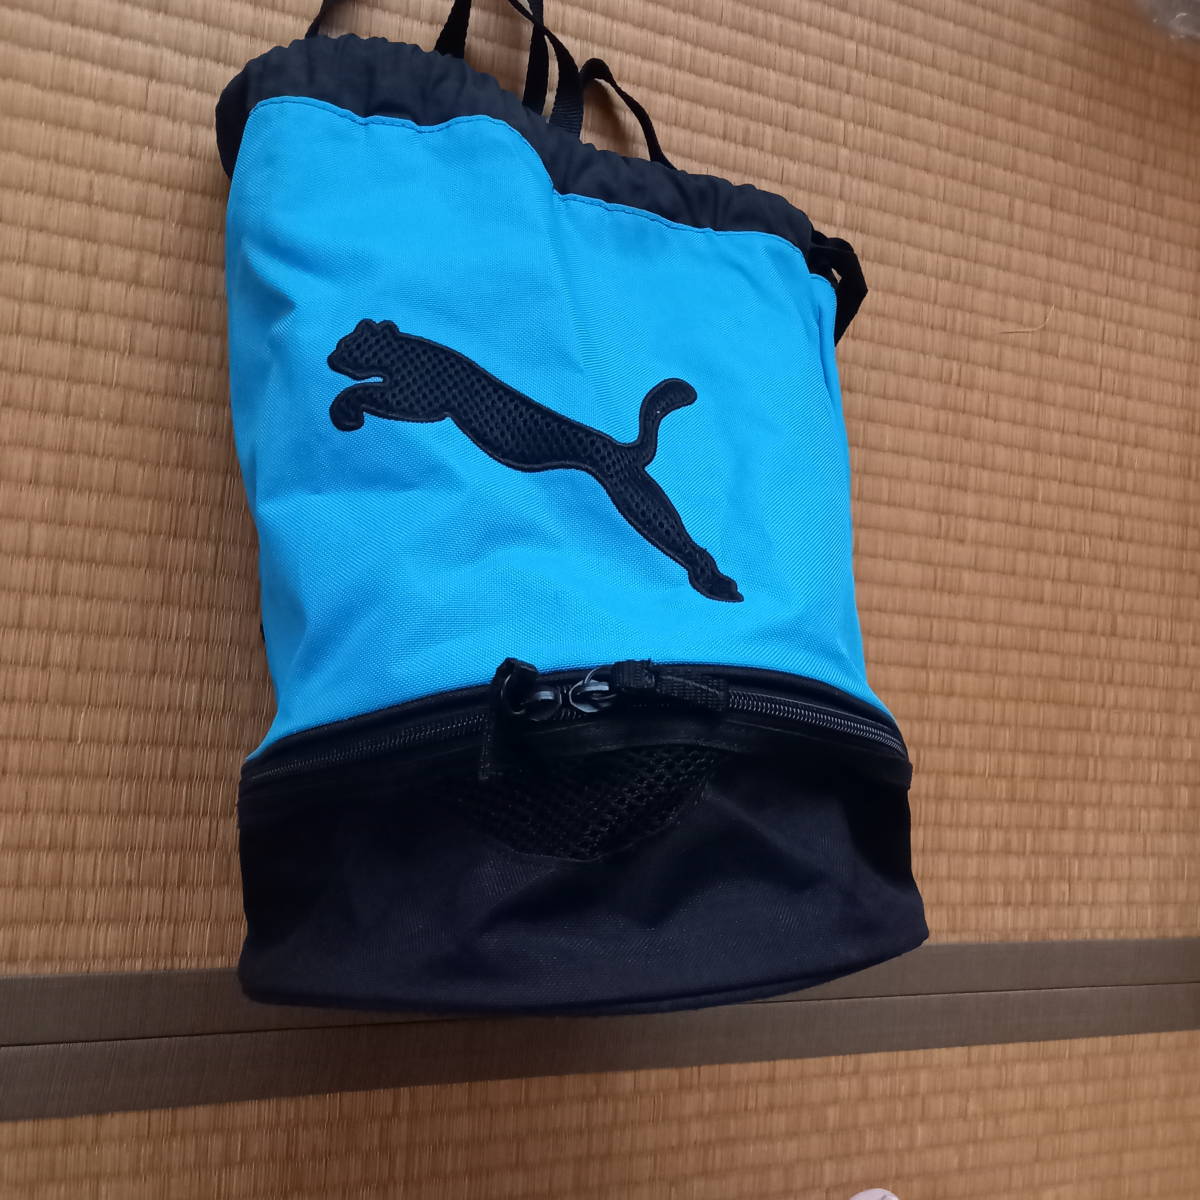 ☆PUMAプーマ プールバッグ☆ 黒×ブルー 鞄 カバン かばん水泳スイミングリュック型